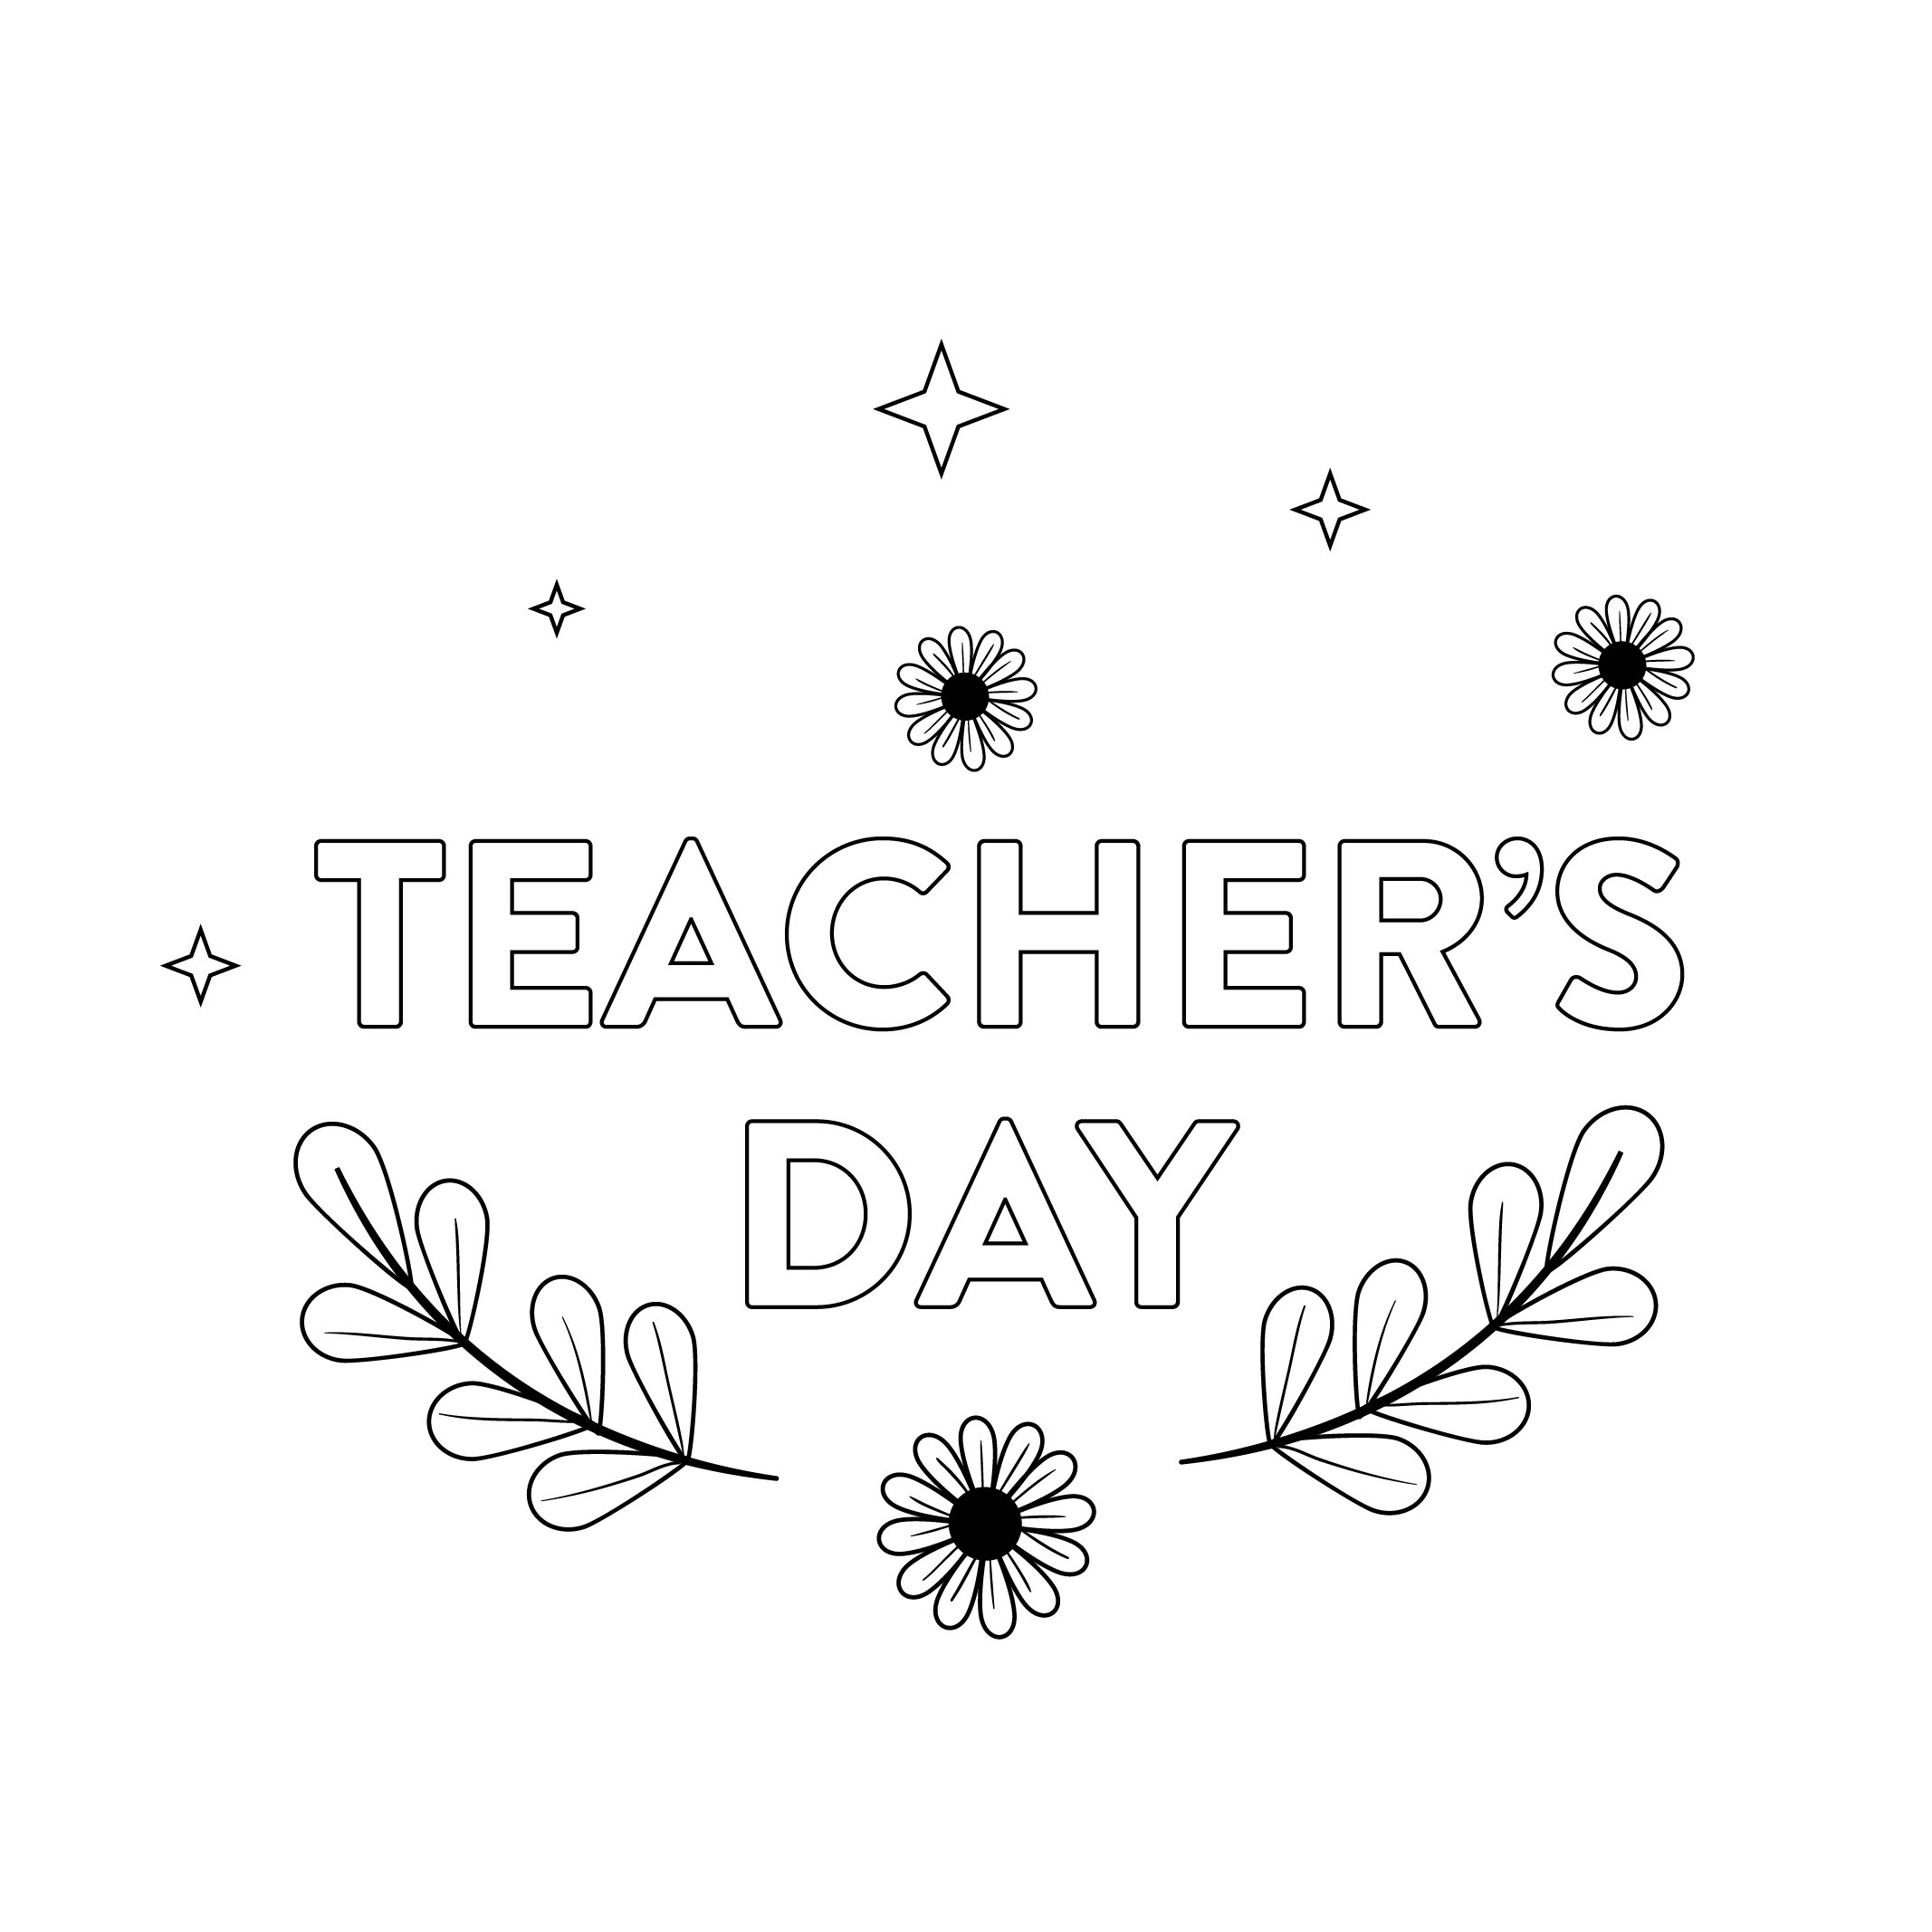 Happy Teachers Day Drawing On Blackboard Stock Vector (Royalty Free)  1189983238 | Shutterstock